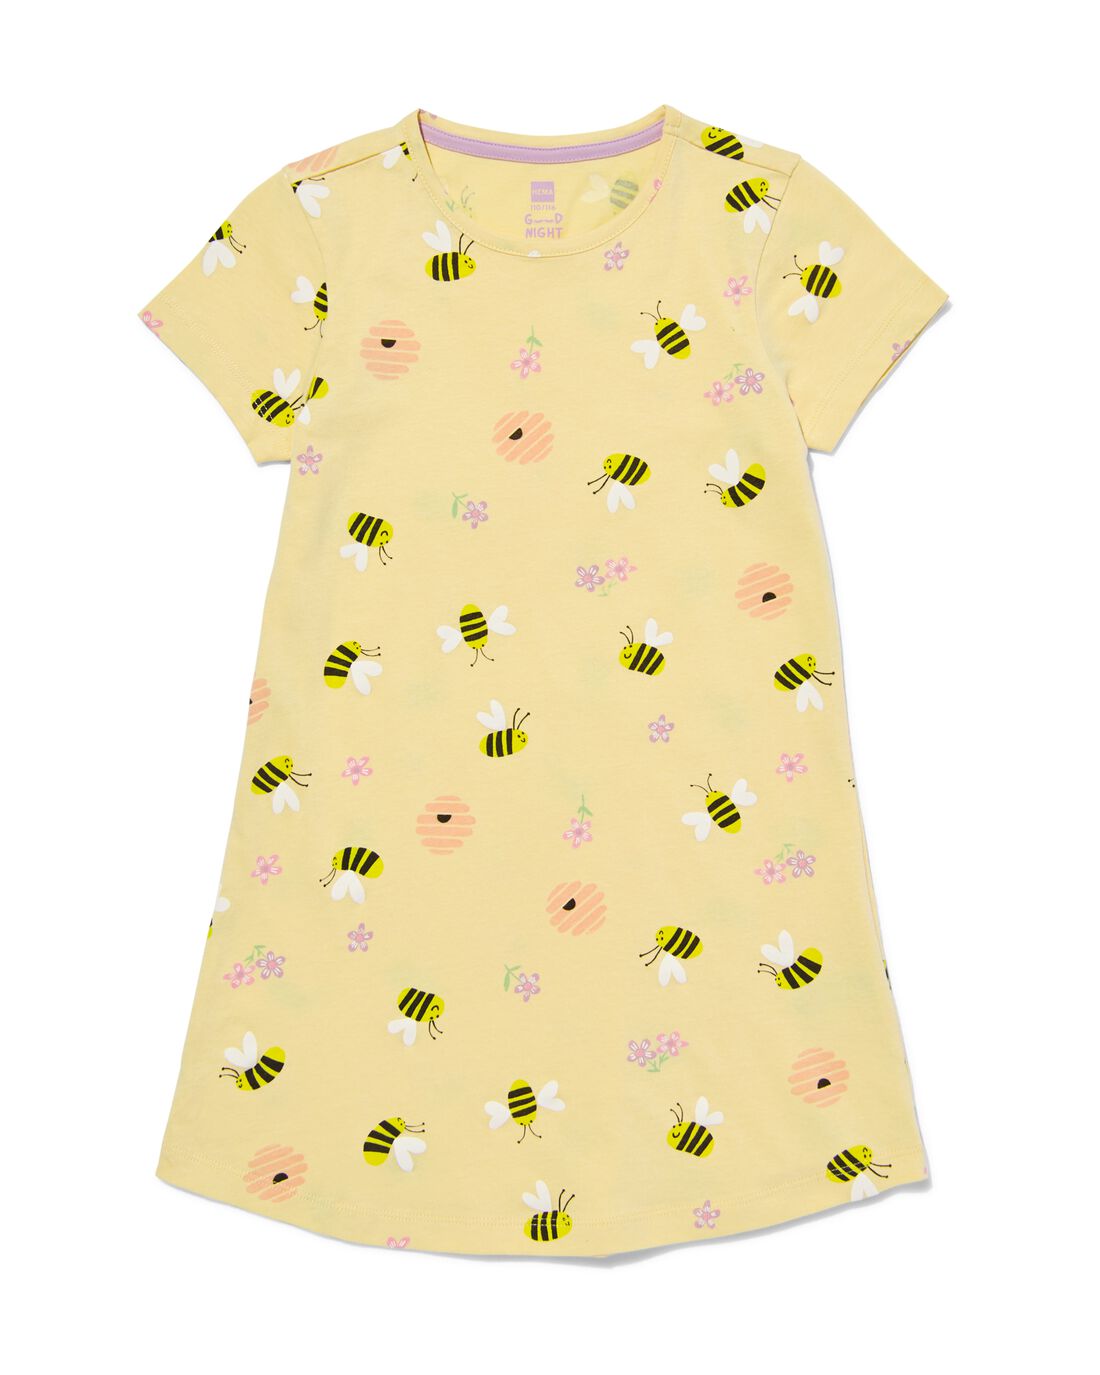 HEMA Kinder Nachthemd Katoen Bijen Geel (geel)